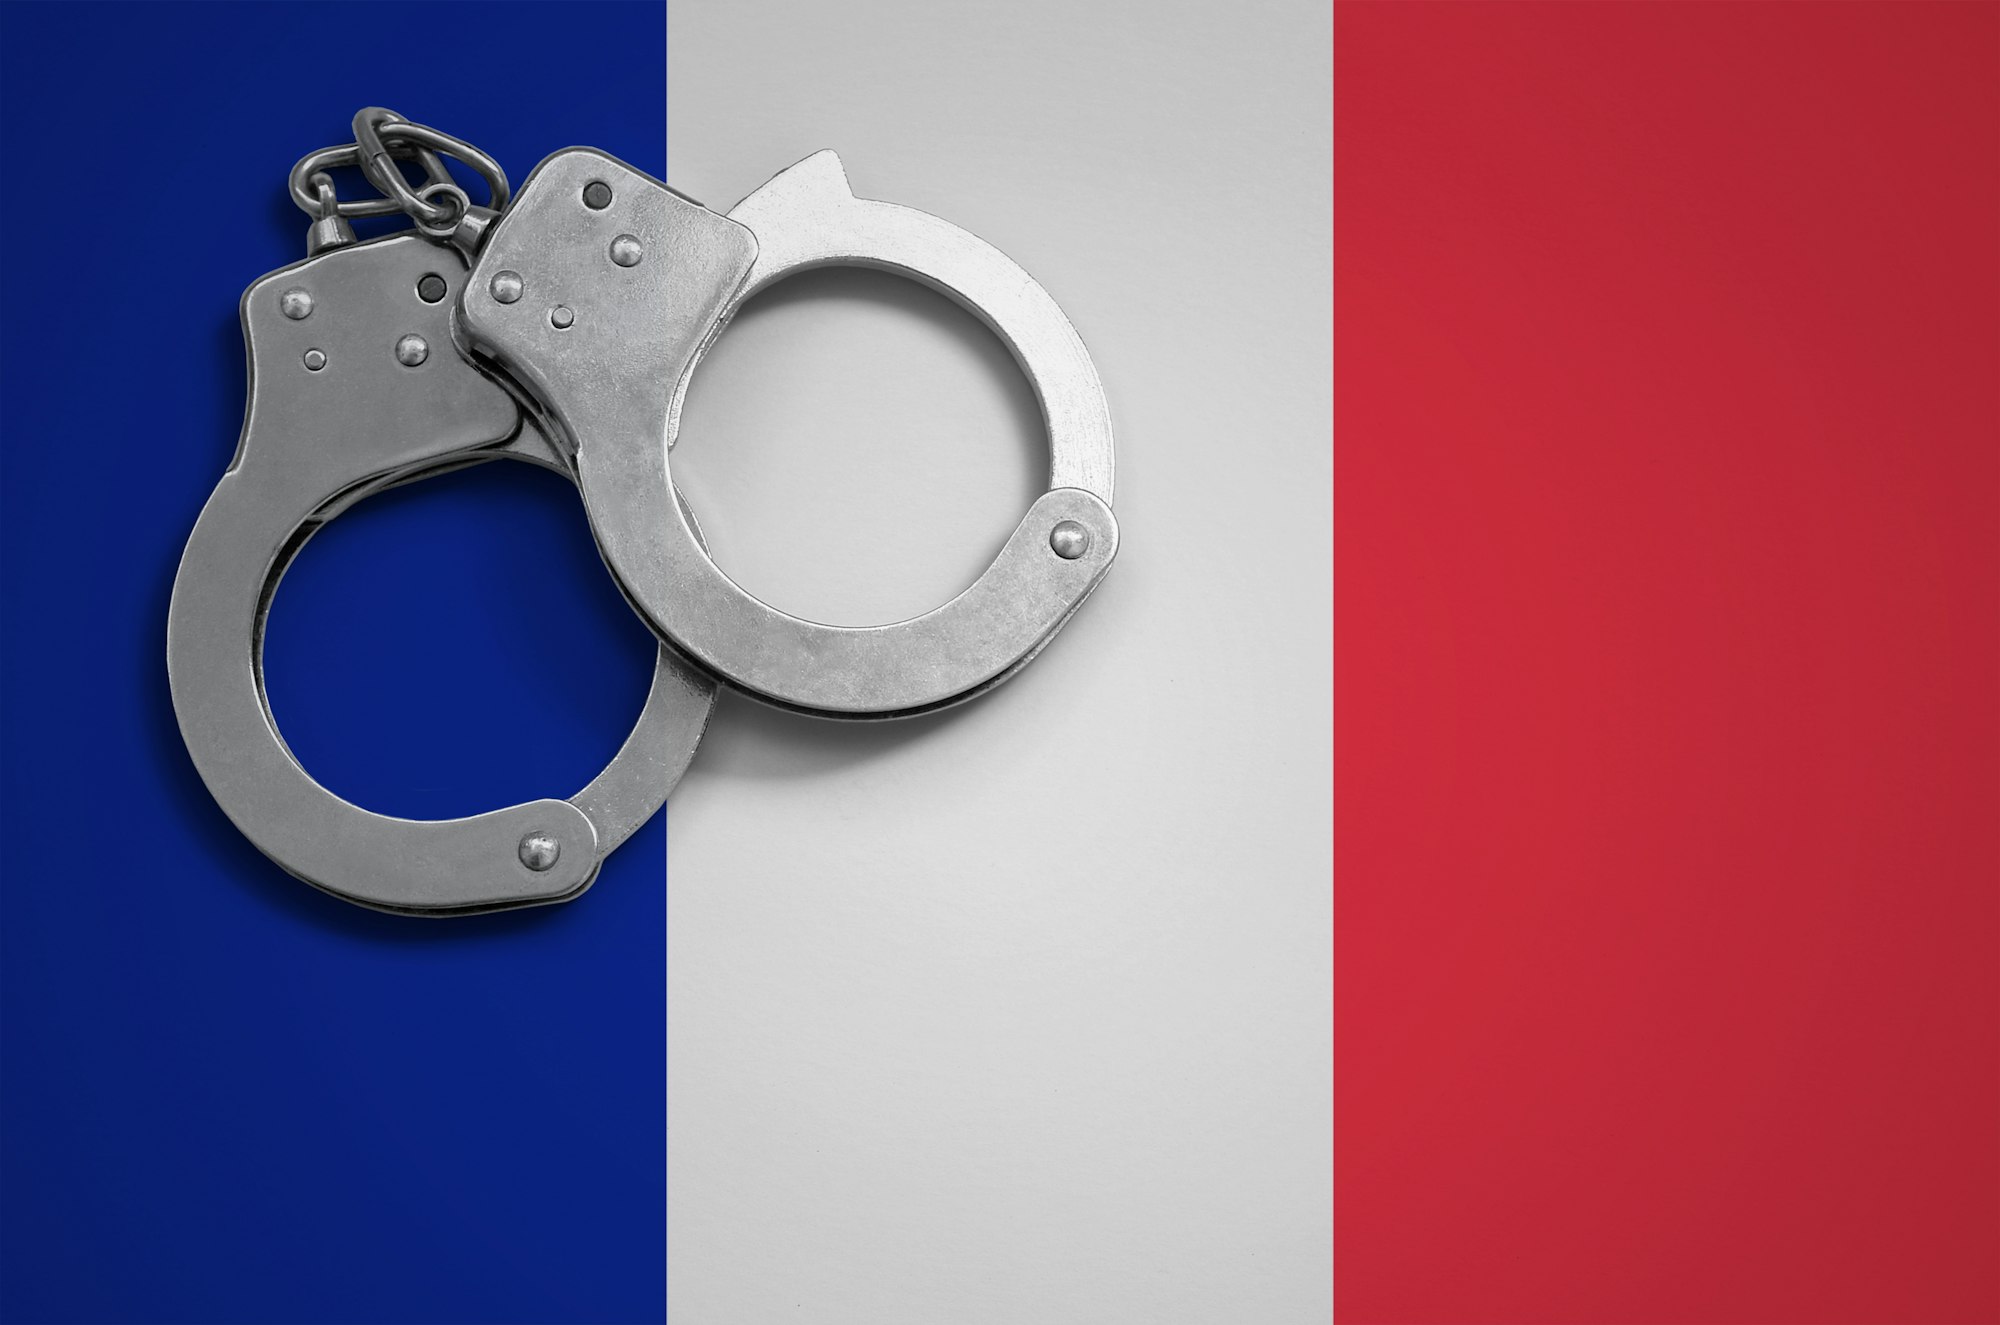 Les autorités arrêtent trois suspects suite à l'attaque cybernétique contre France Travail